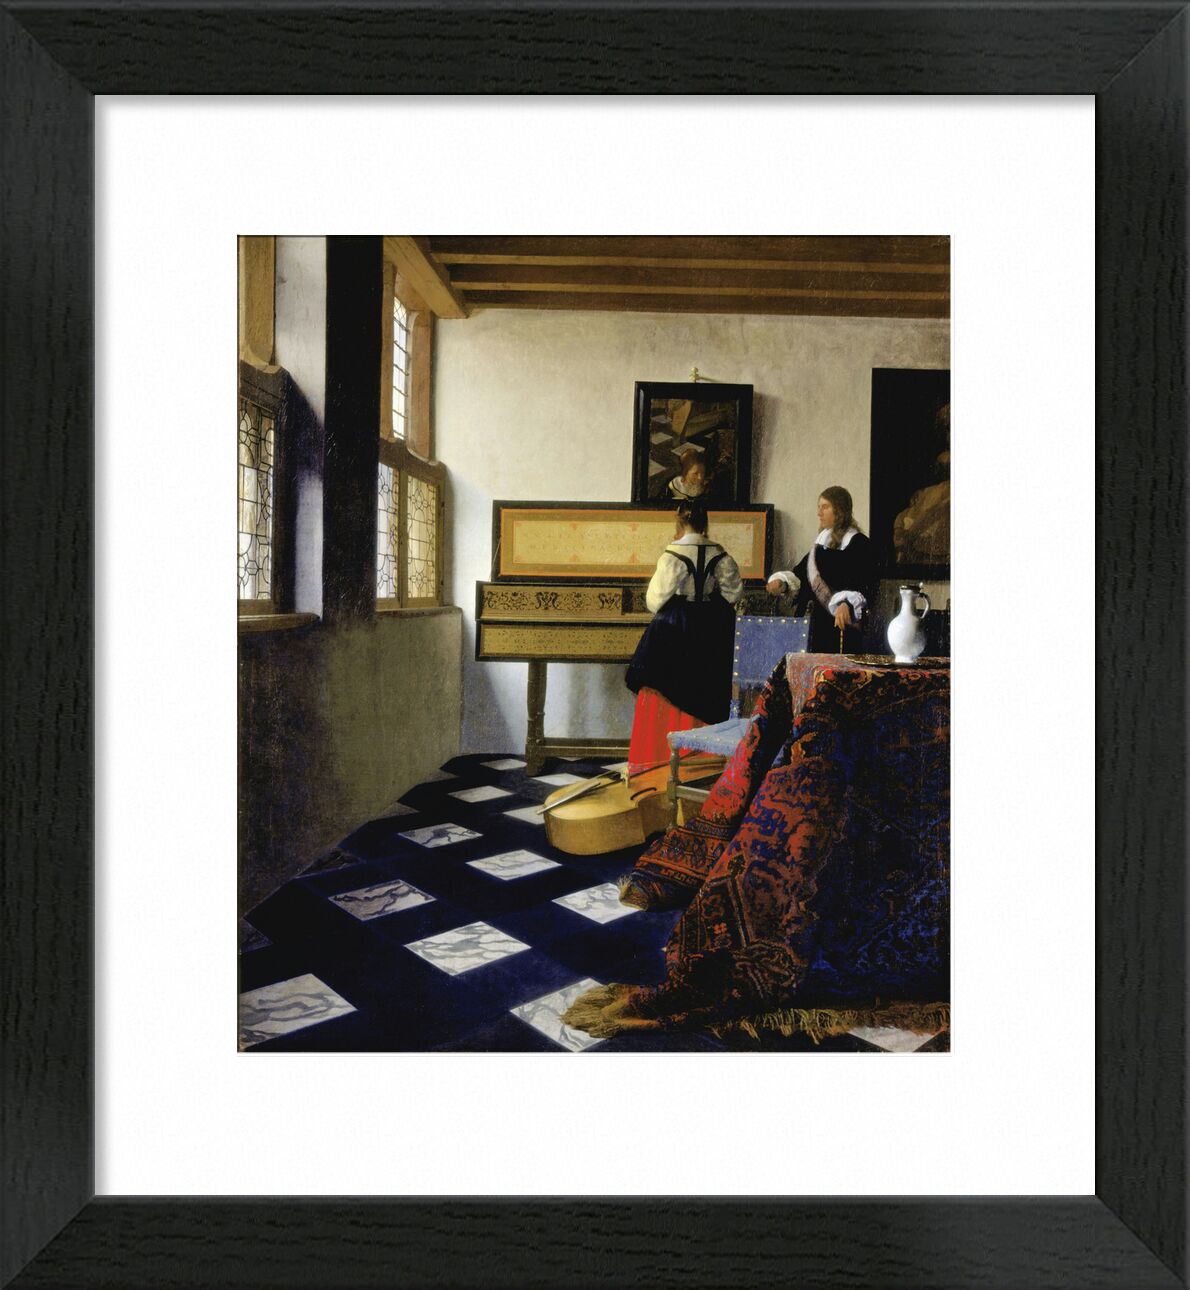 Dame am Virginal mit Einem Herrn, "Die Musikstunde" - Vermeer von Bildende Kunst, Prodi Art, Musikstunde, Musik, Frau, Johannes Vermeer, Vermeer